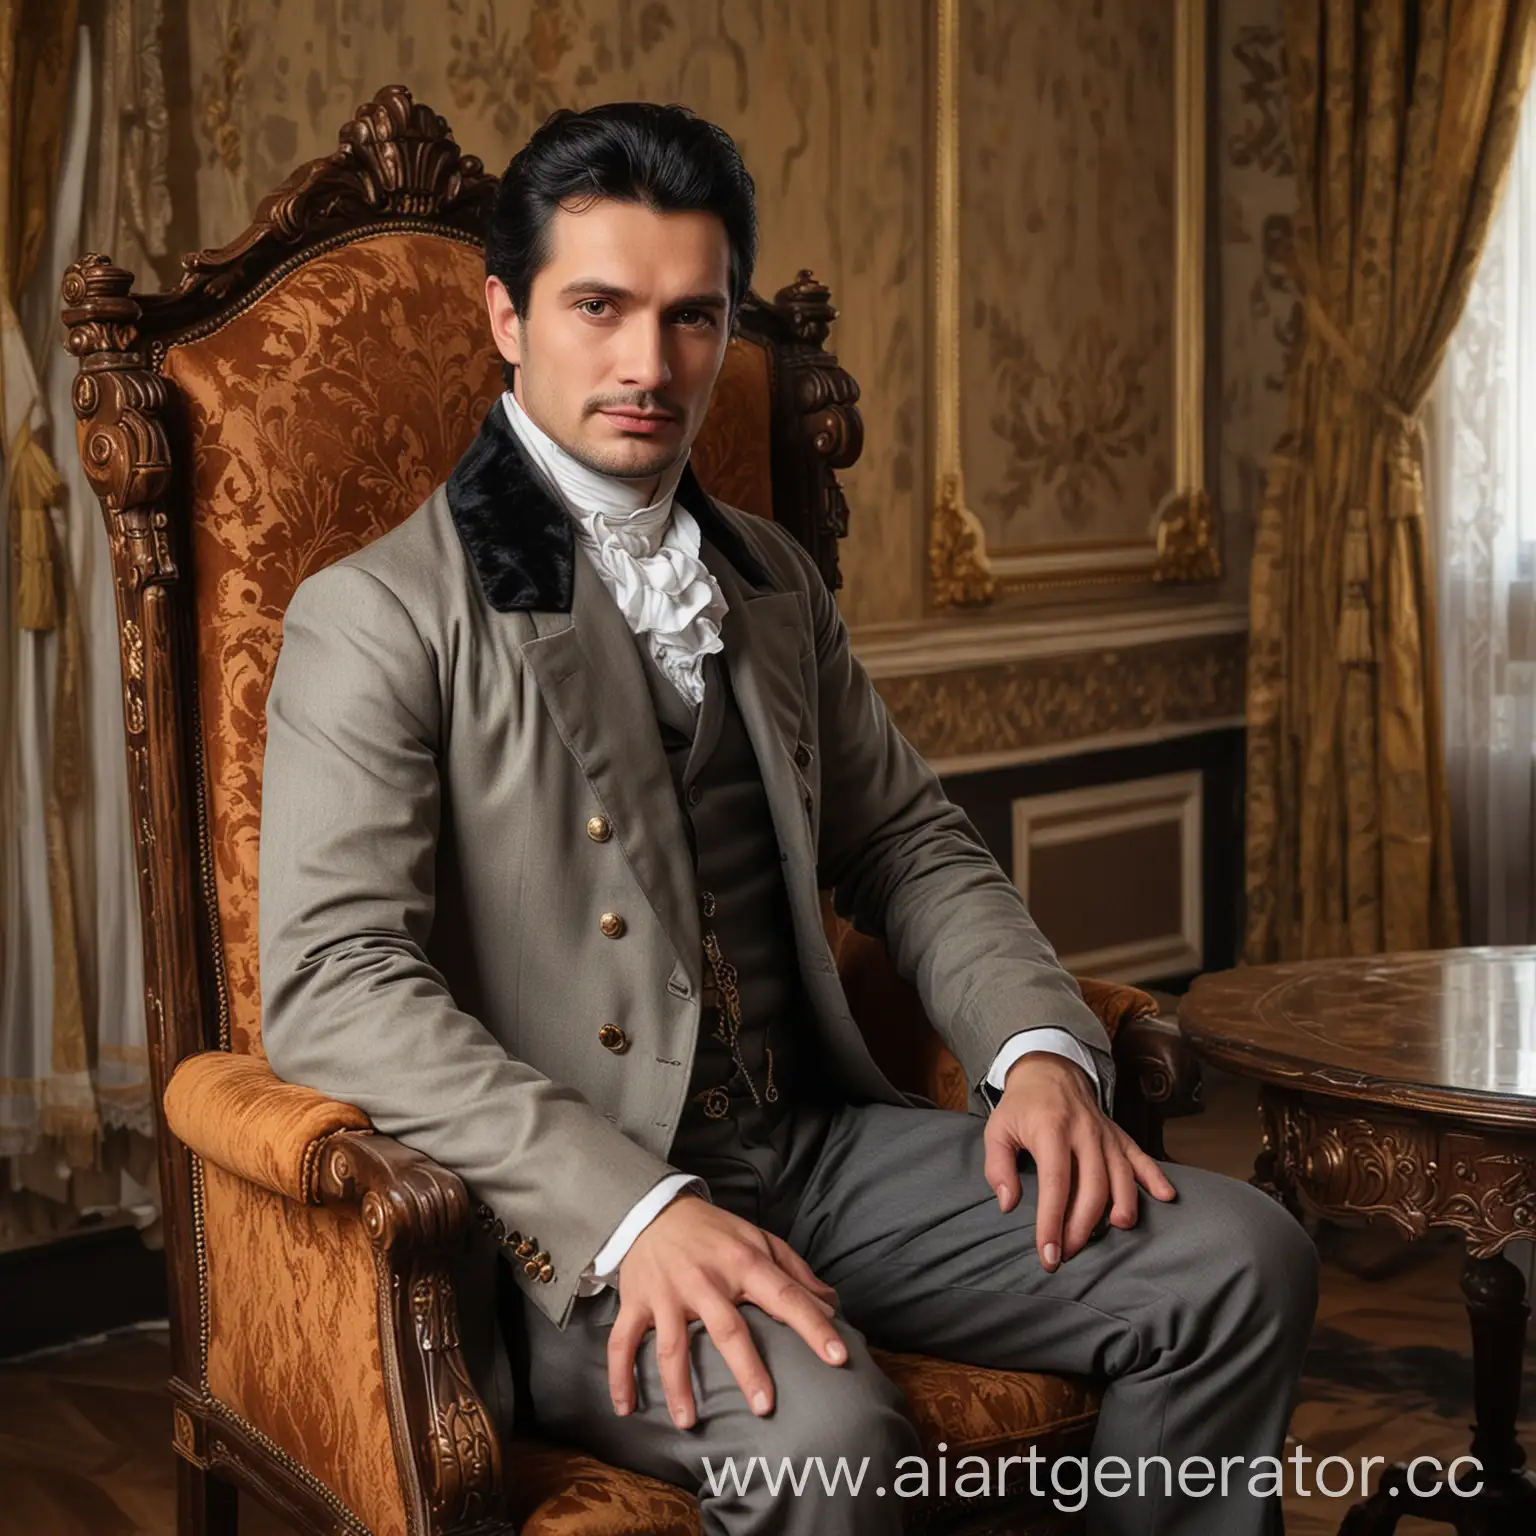 Русский мужчина 40 лет, чёрные волосы, карие глаза, одет в мужскую одежду 19 века, добрый, сидит на красивом стуле в аристократичной комнате, панель Резидент Ивел